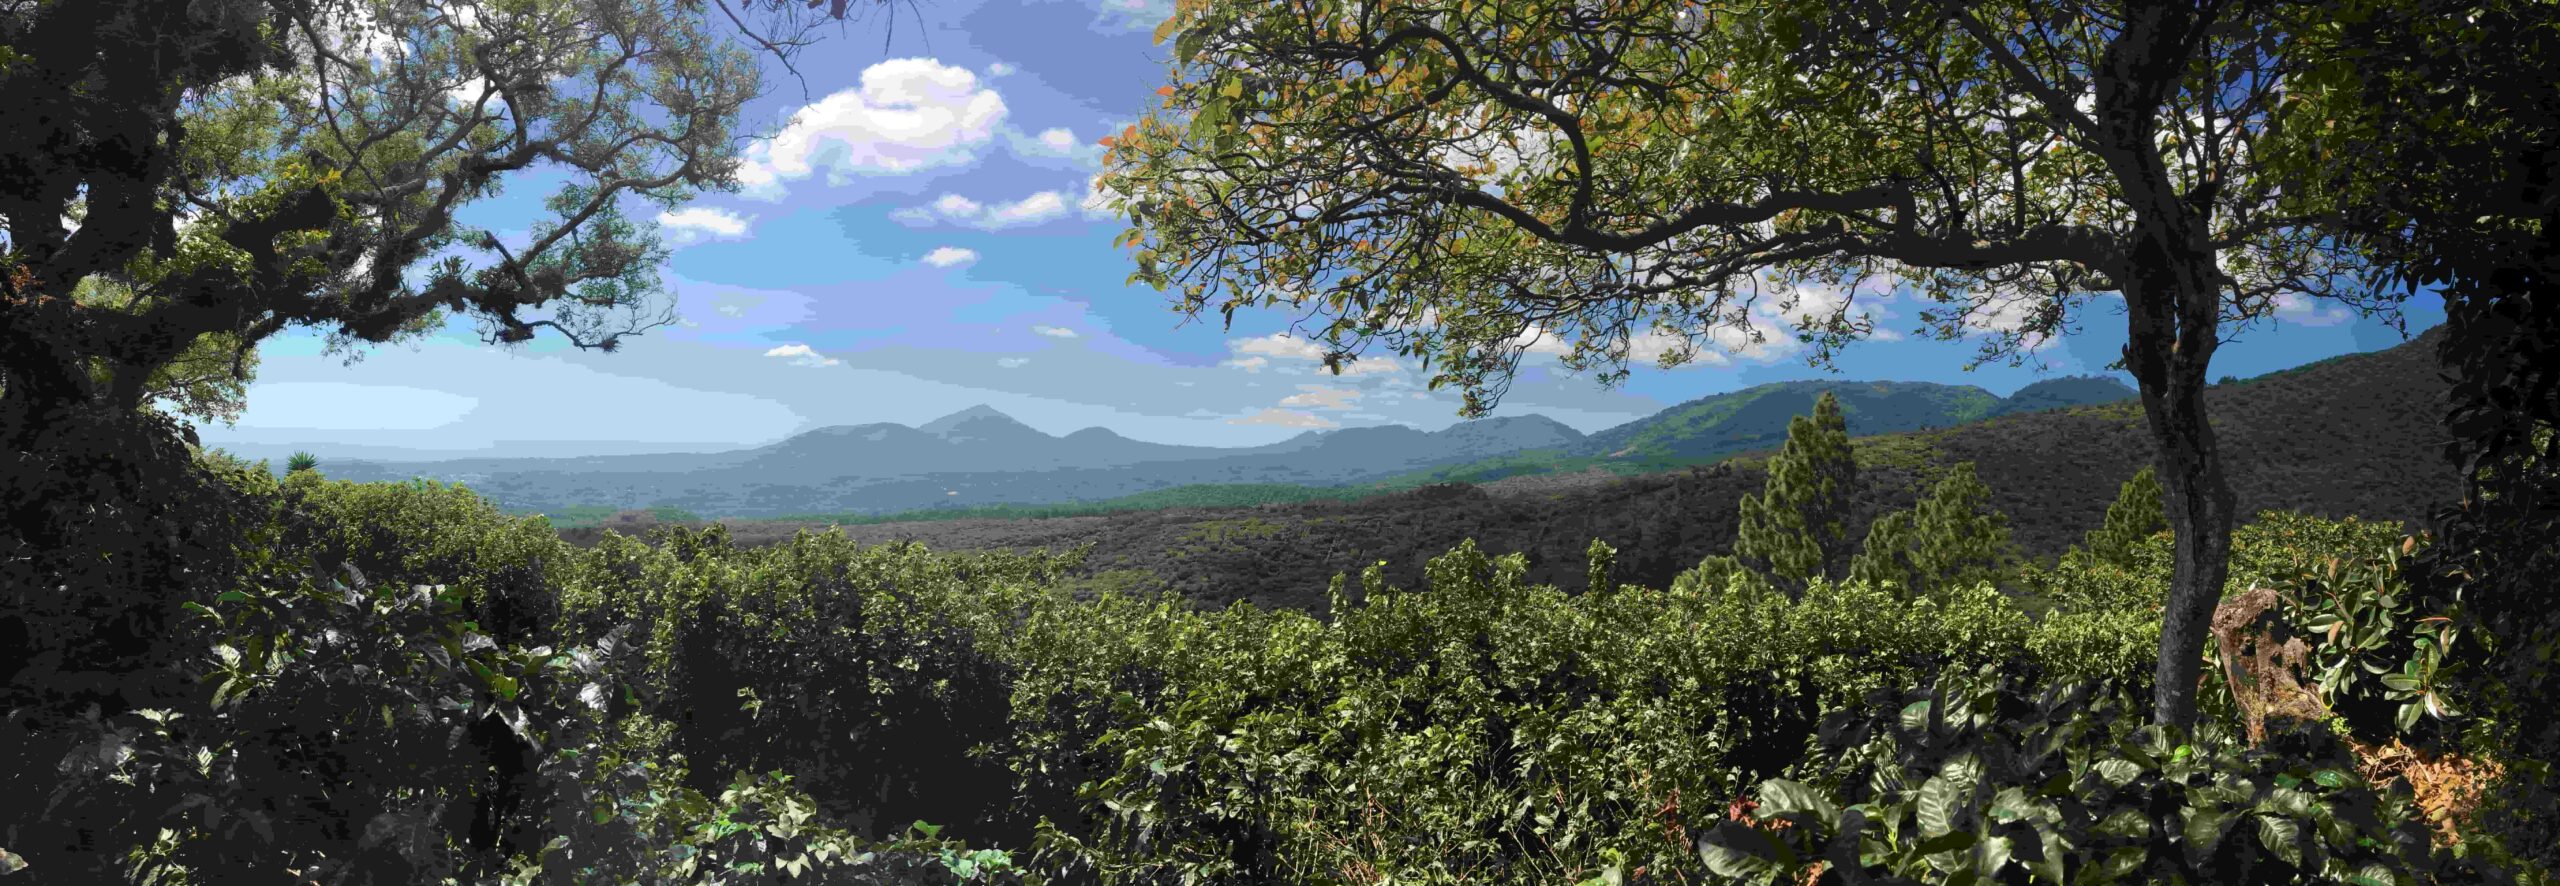 Plantación de café en la región de Apaneca Ilamatepec, El Salvador